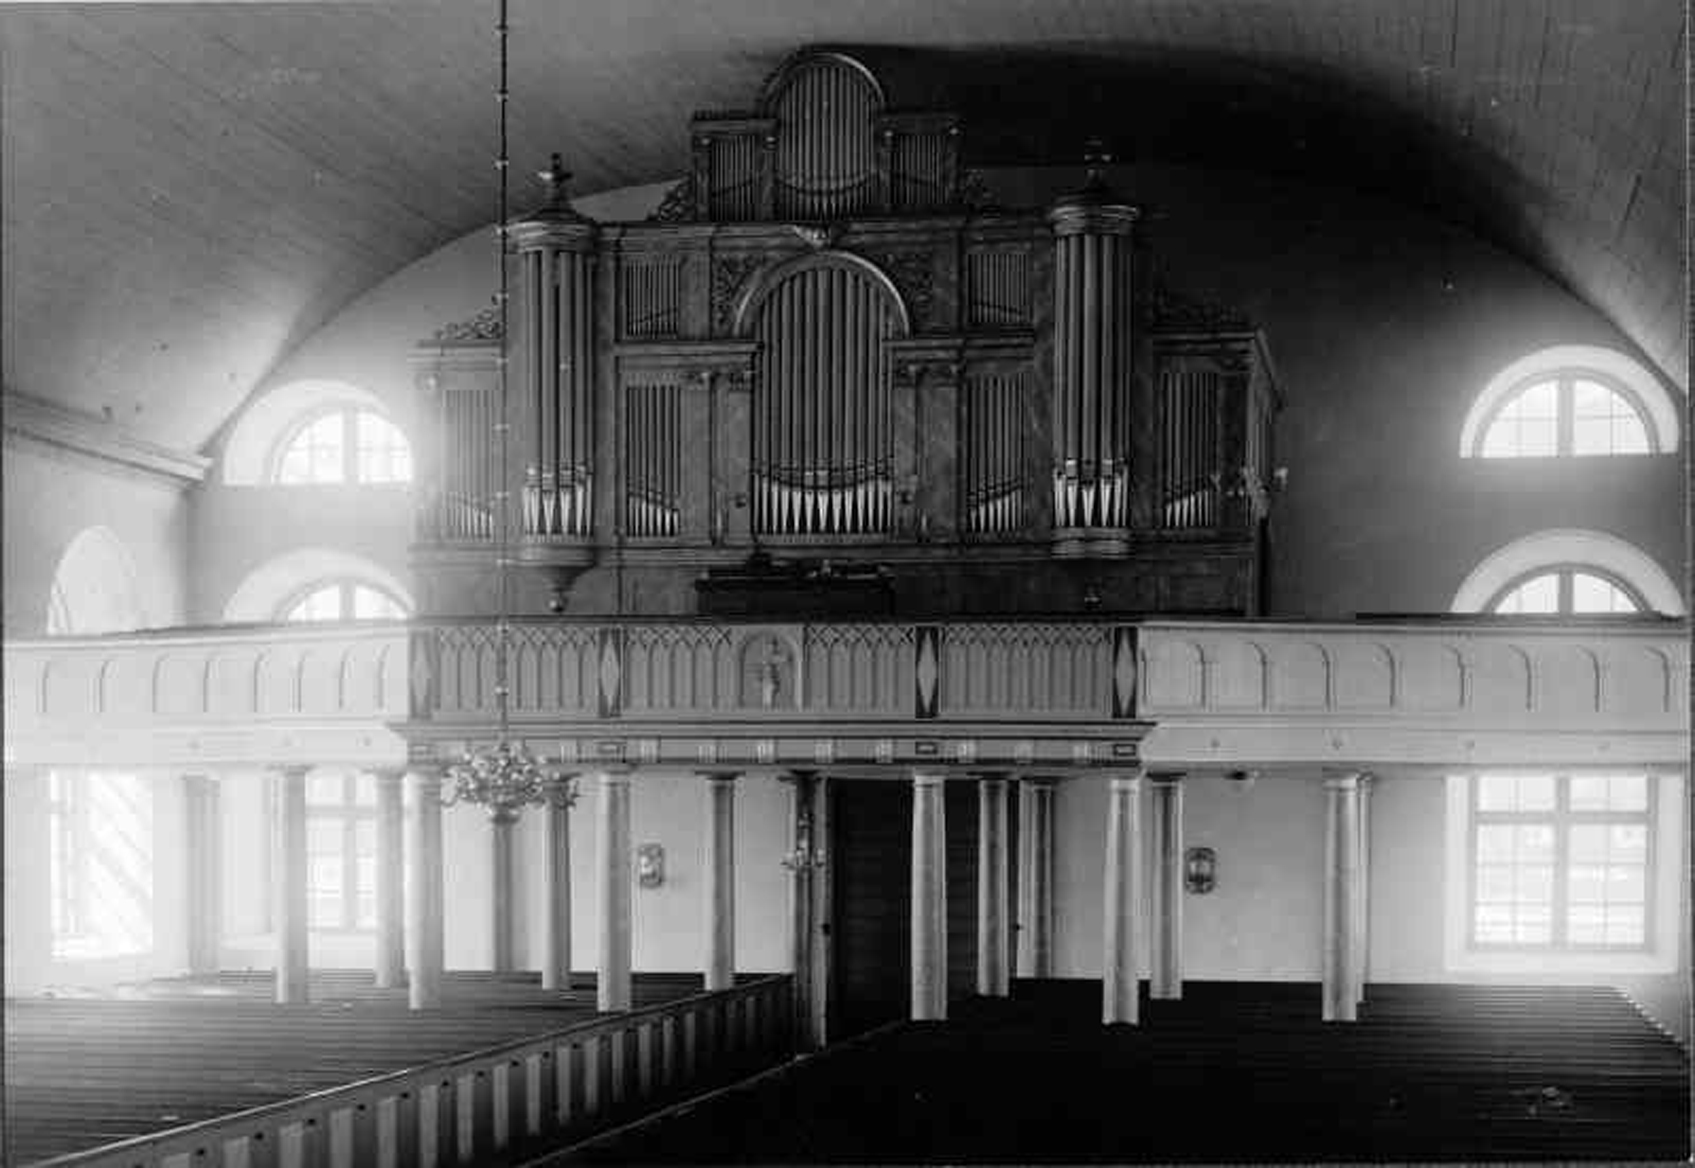 Osby kyrka läktarunderbyggnad & ledningsschakt Fig 1: Osby kyrkas interiör mot väster under tidigt 1900-tal. Äldre fotografi i ATA.